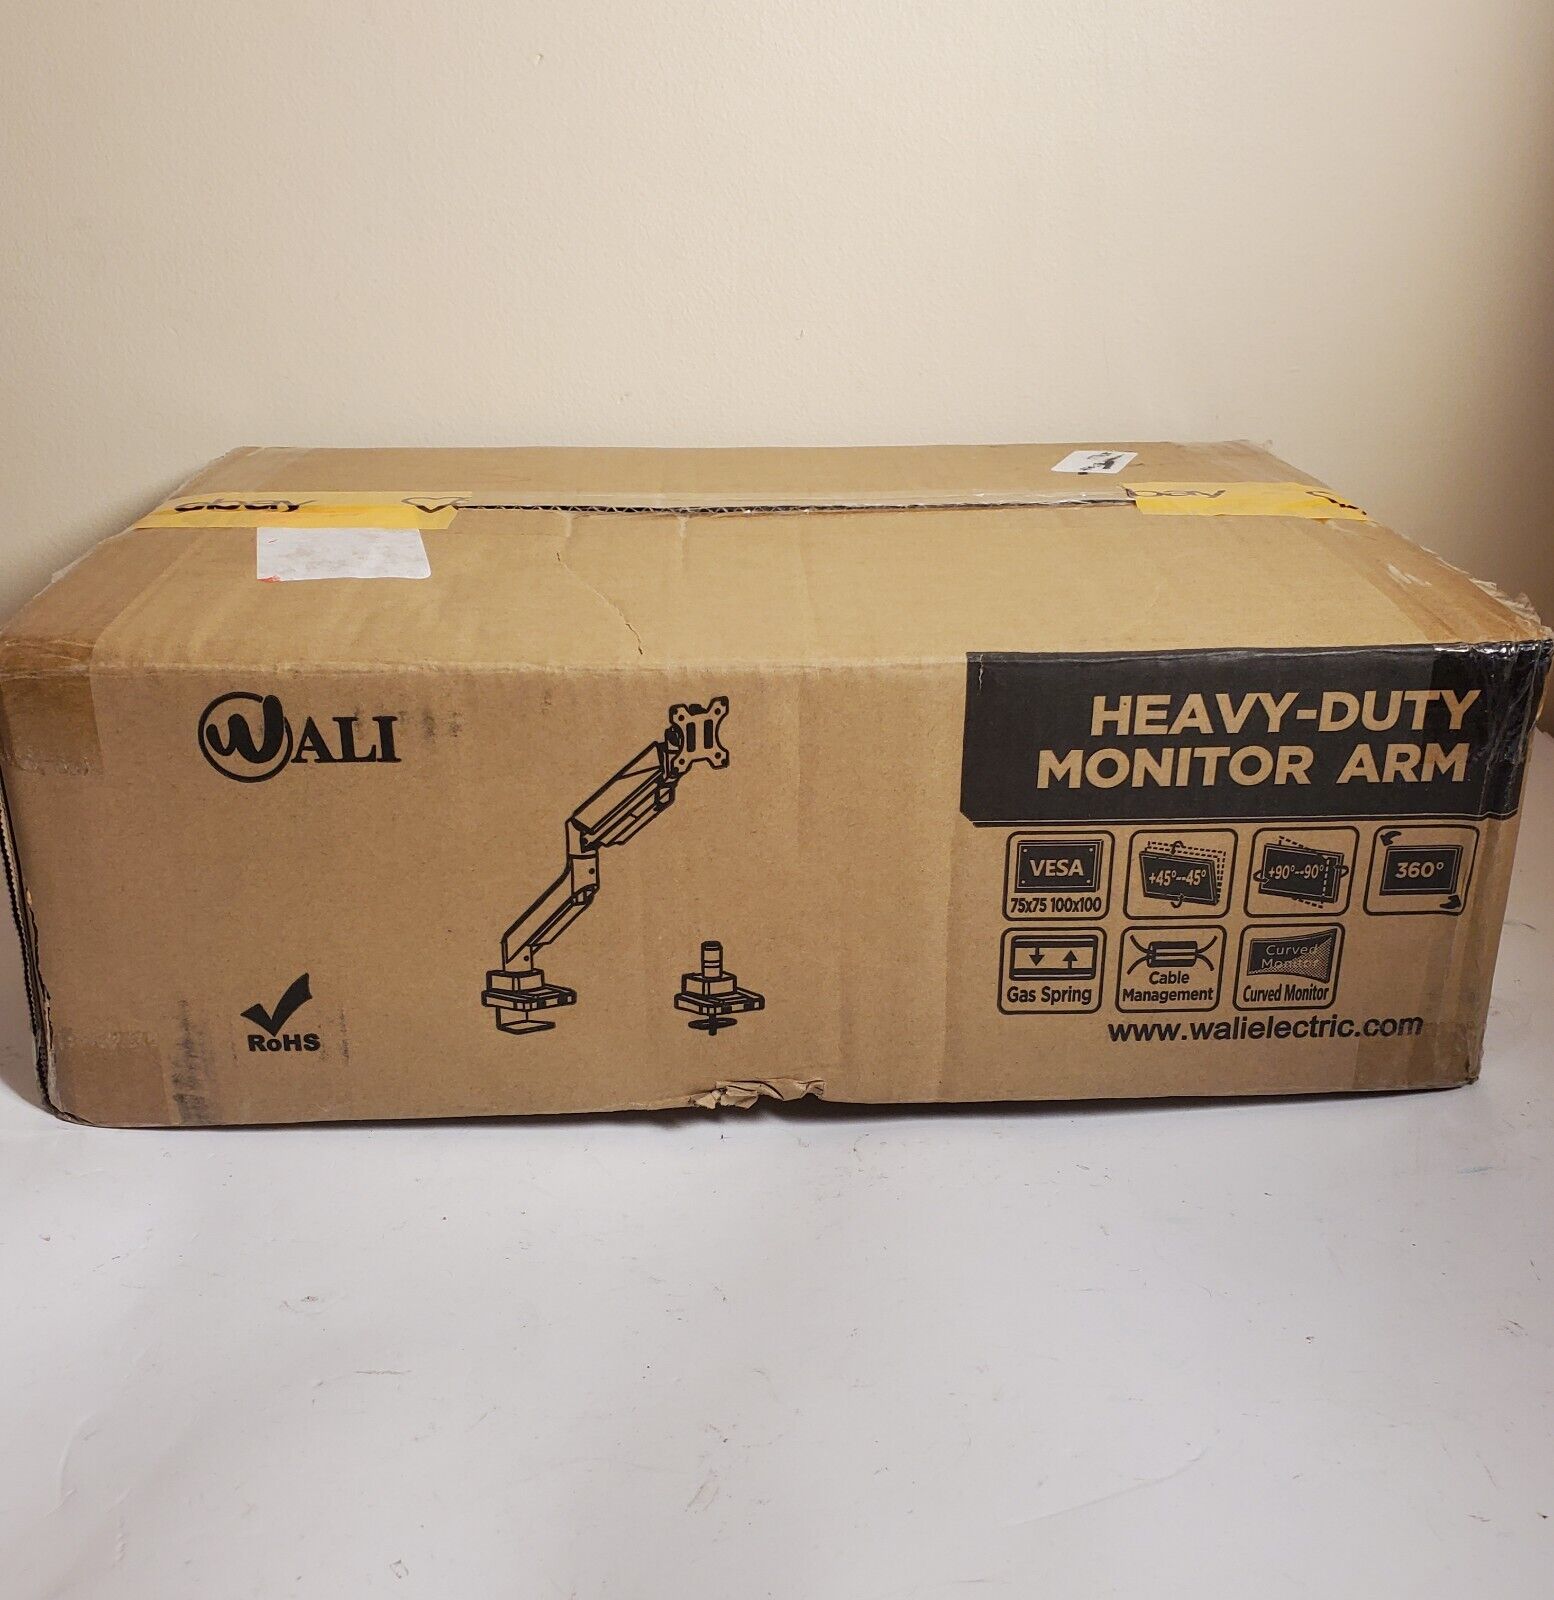 Wali Heavy-Duty Computer Monitor Arm GSM001XL